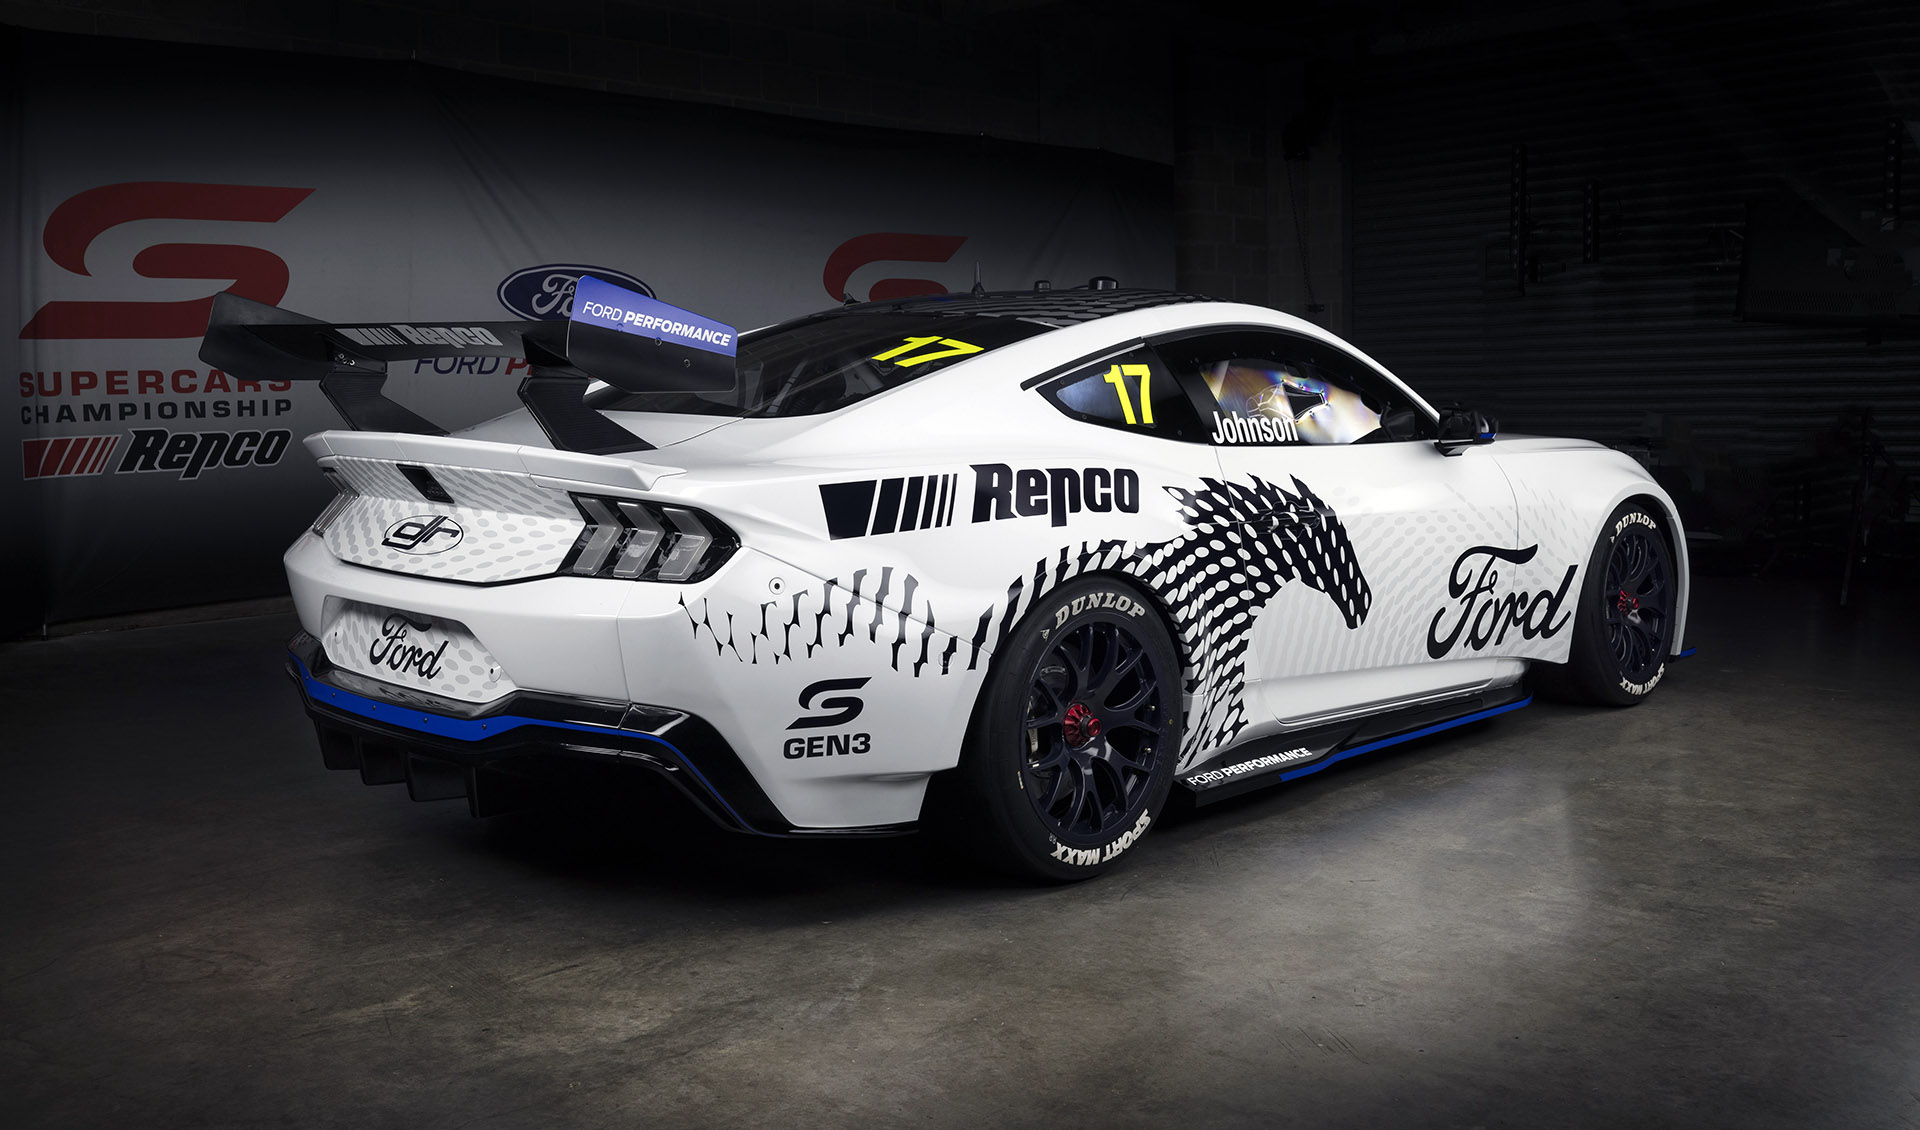 Światowy debiut: nowy wyścigowy Ford Mustang GT serii Supercars